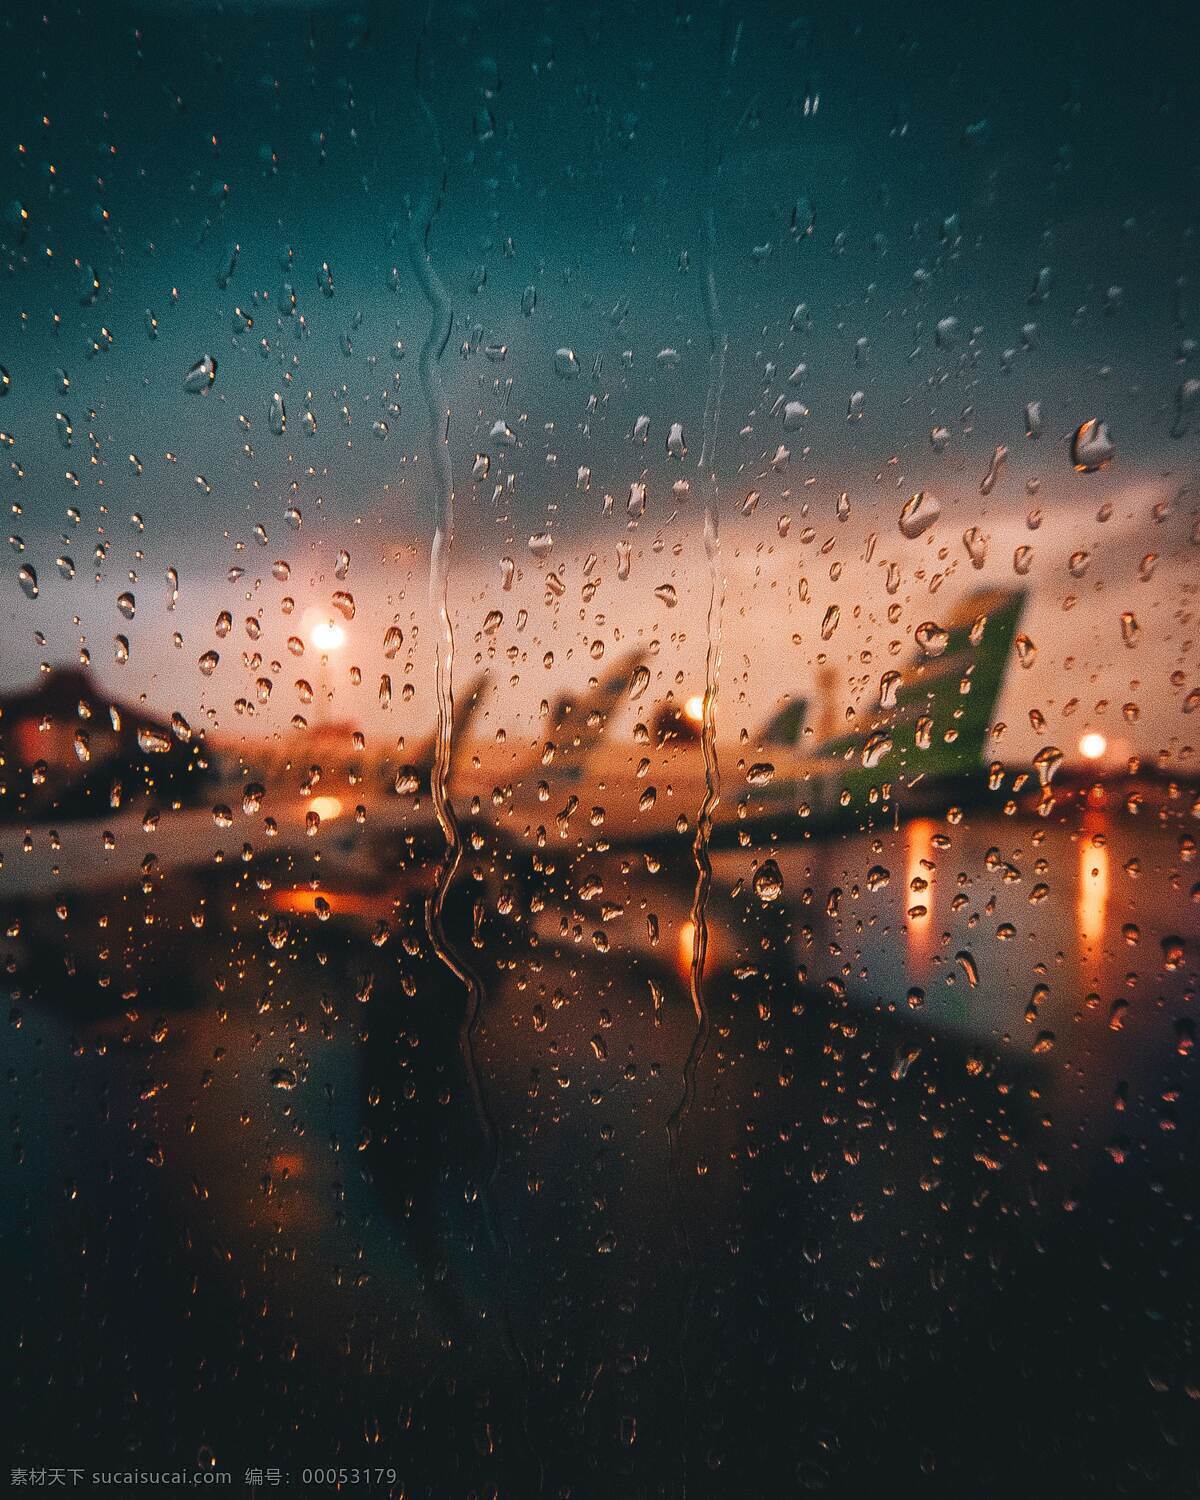 雨天 朦胧 机场 飞机 水珠 风景 背景 壁纸 创意 自然景观 自然风景